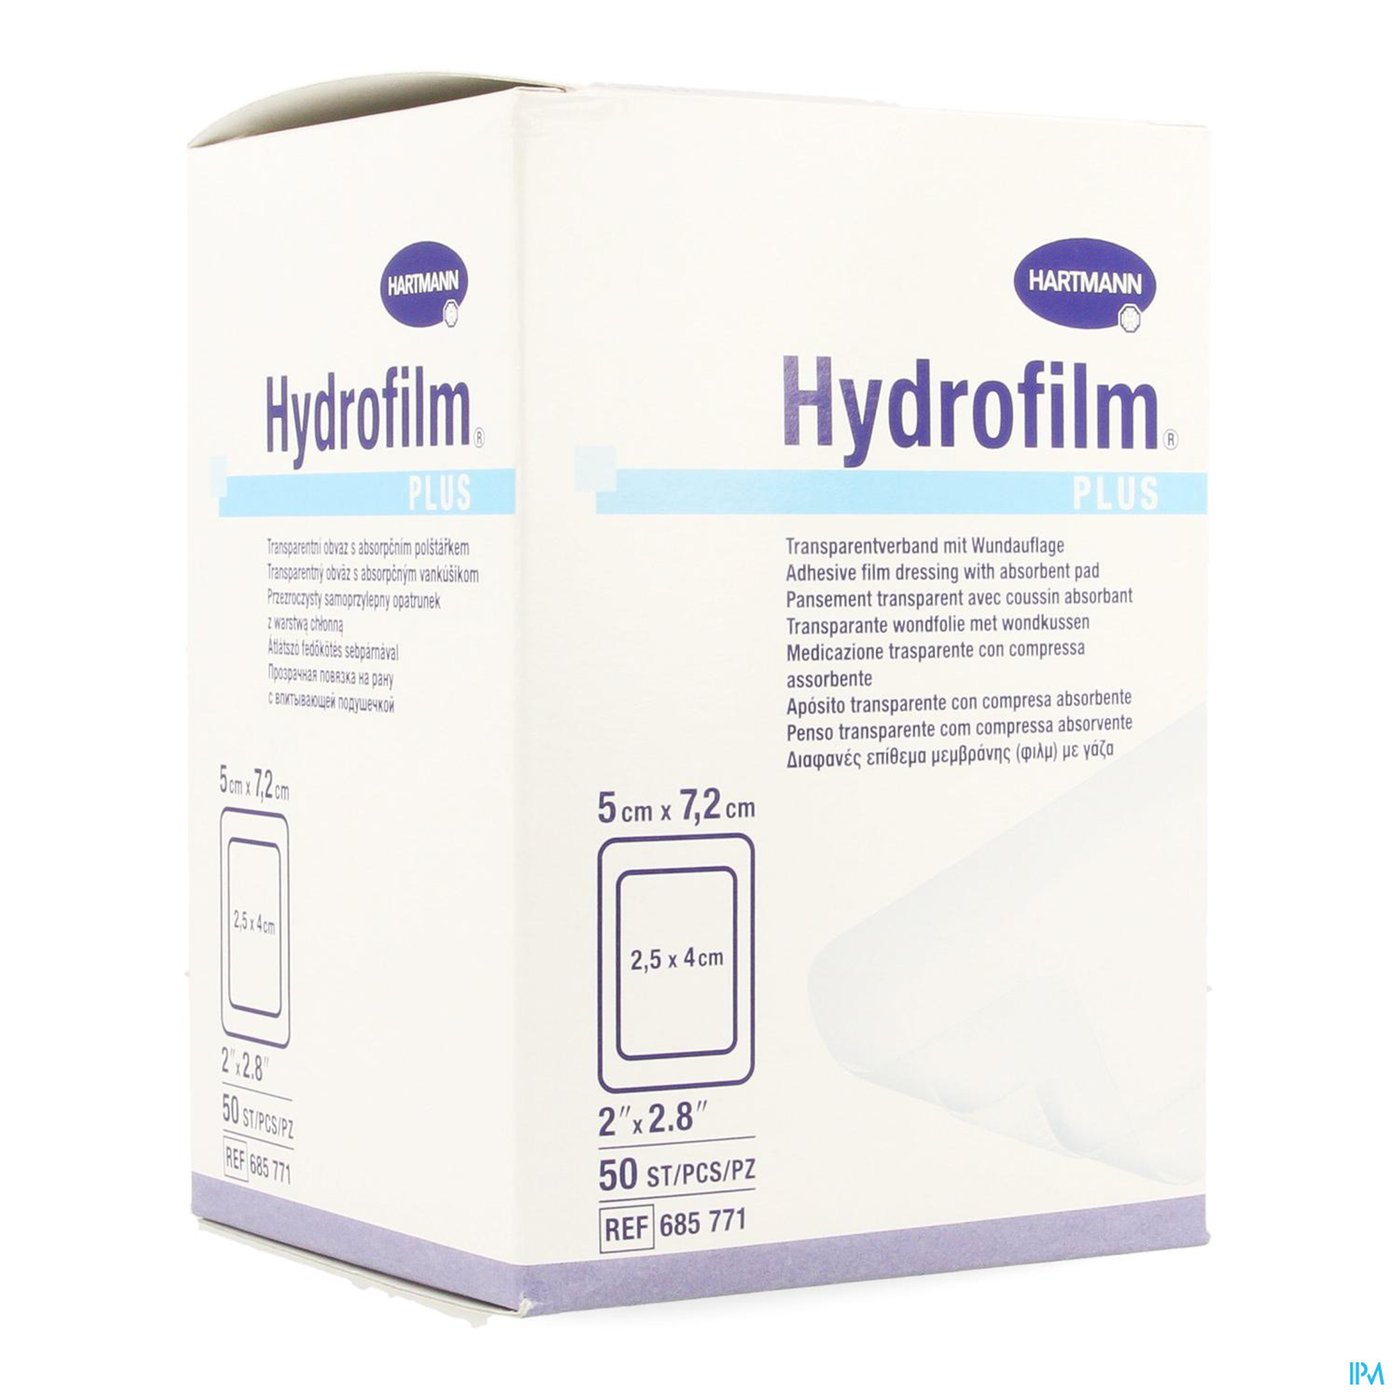 Hydrofilm Plus 5x7,2cm 50 P/s